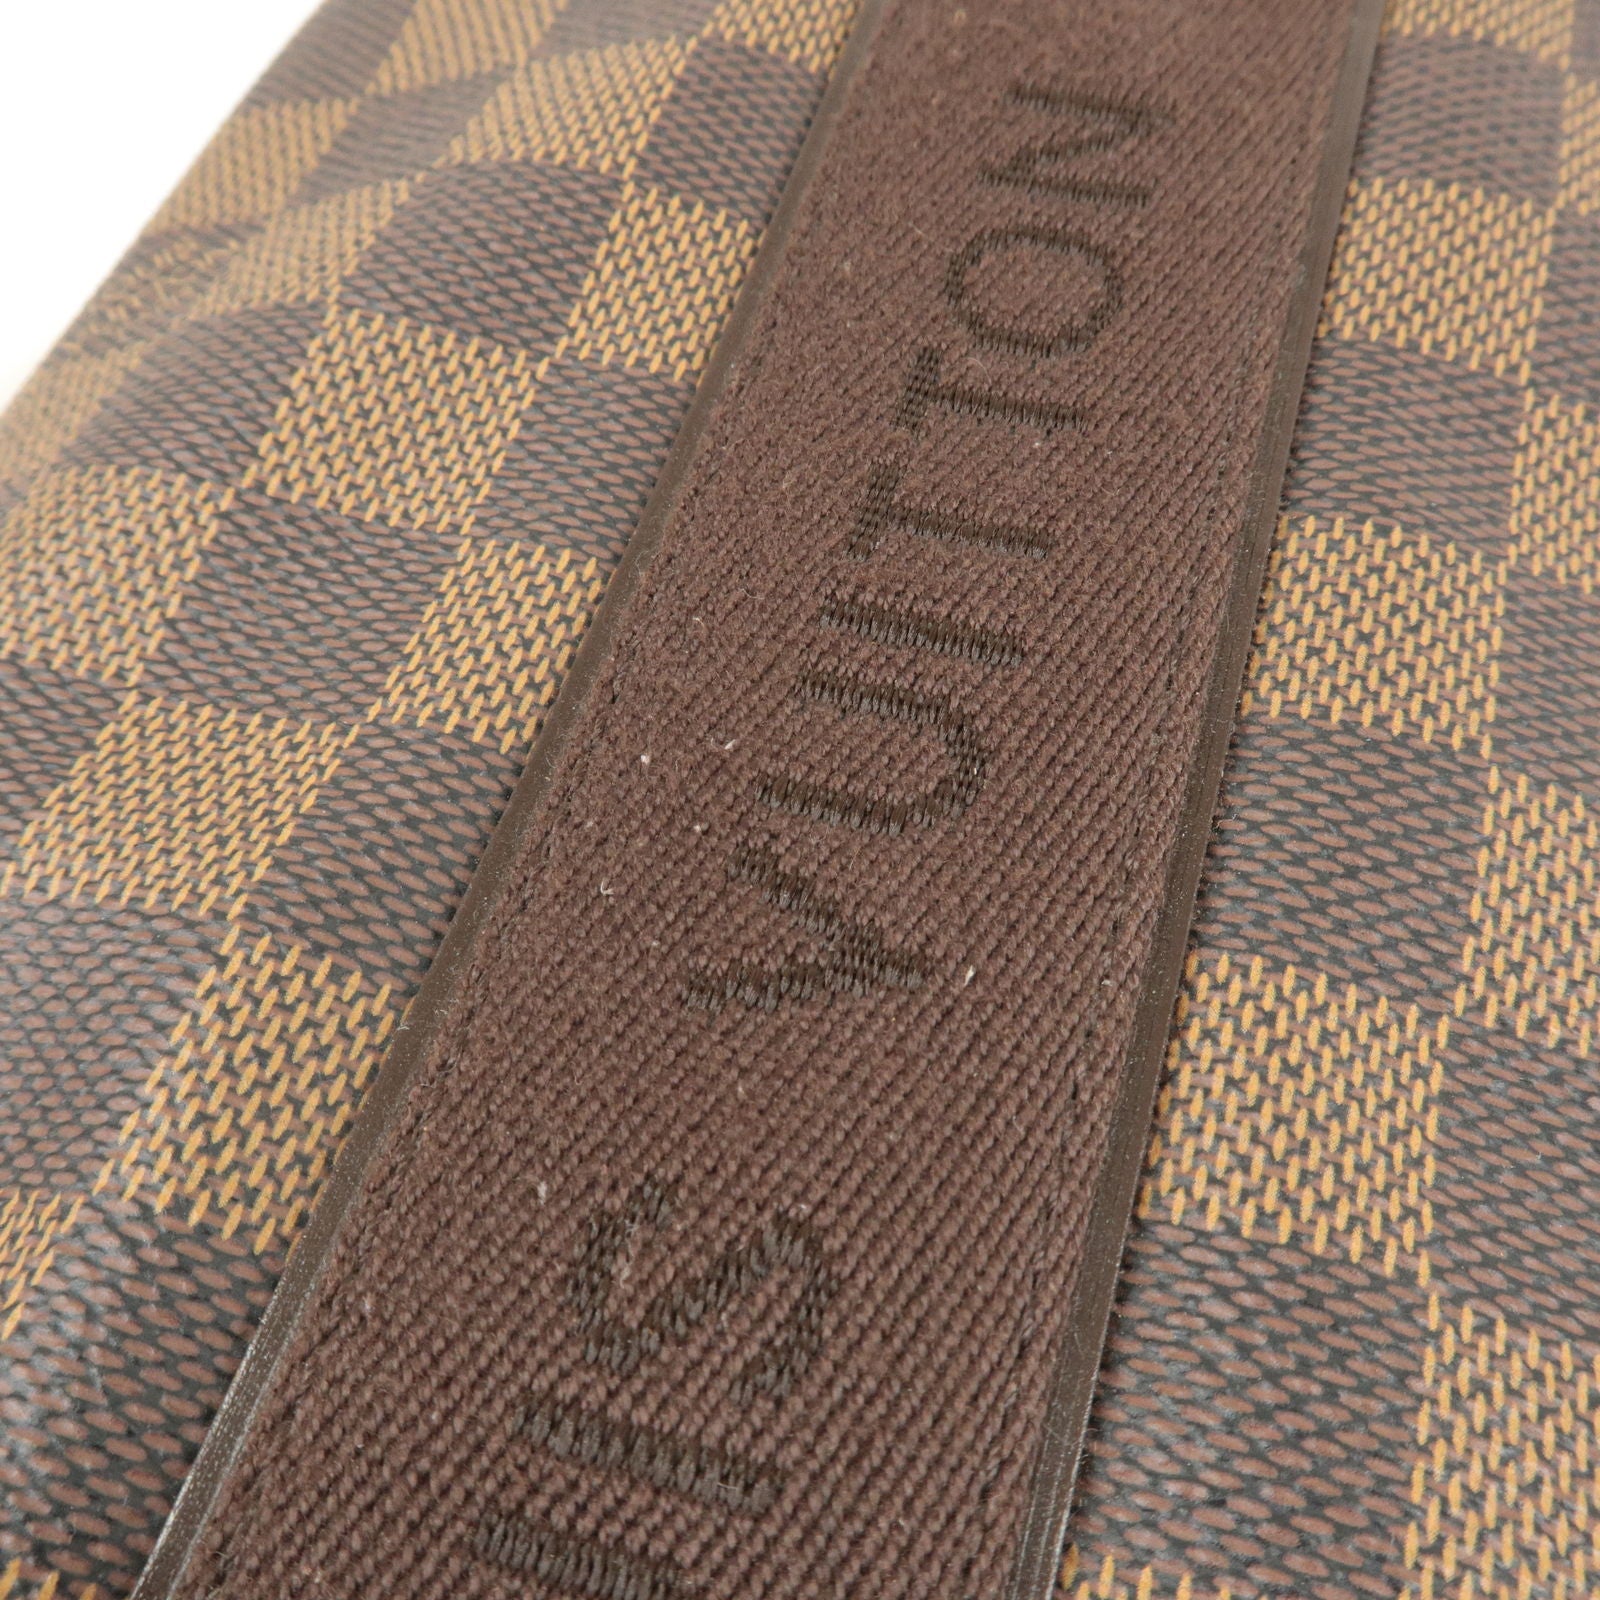 Louis Vuitton Damier Caba Beaubourg Tote Bag Ebene Men N52006 Excellent  Z1955